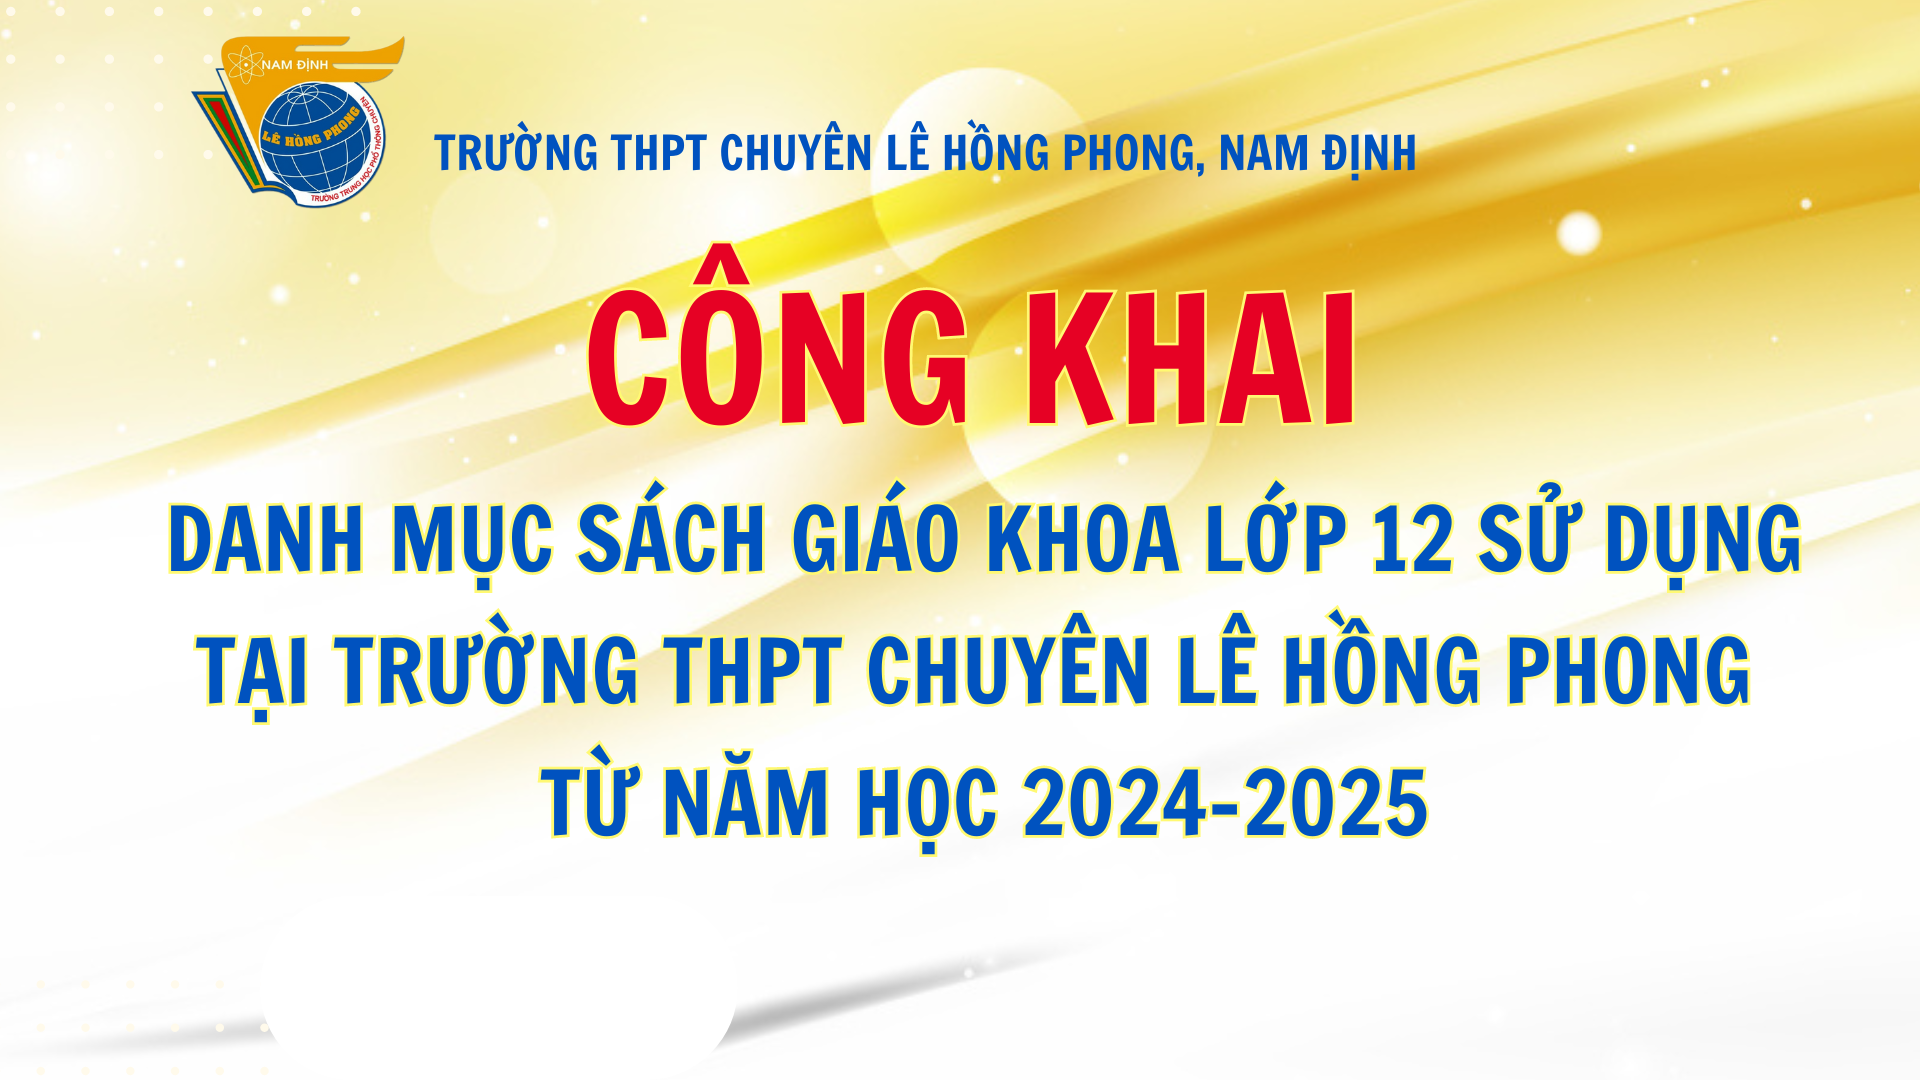 Công khai Danh mục sách giáo khoa lớp 12 sử dụng tại trường THPT chuyên Lê Hồng Phong từ năm học 2024-2025 được UBND tỉnh Nam Định phê duyệt theo QĐ số 1475/QĐ-UBND ngày 12/7/2024 